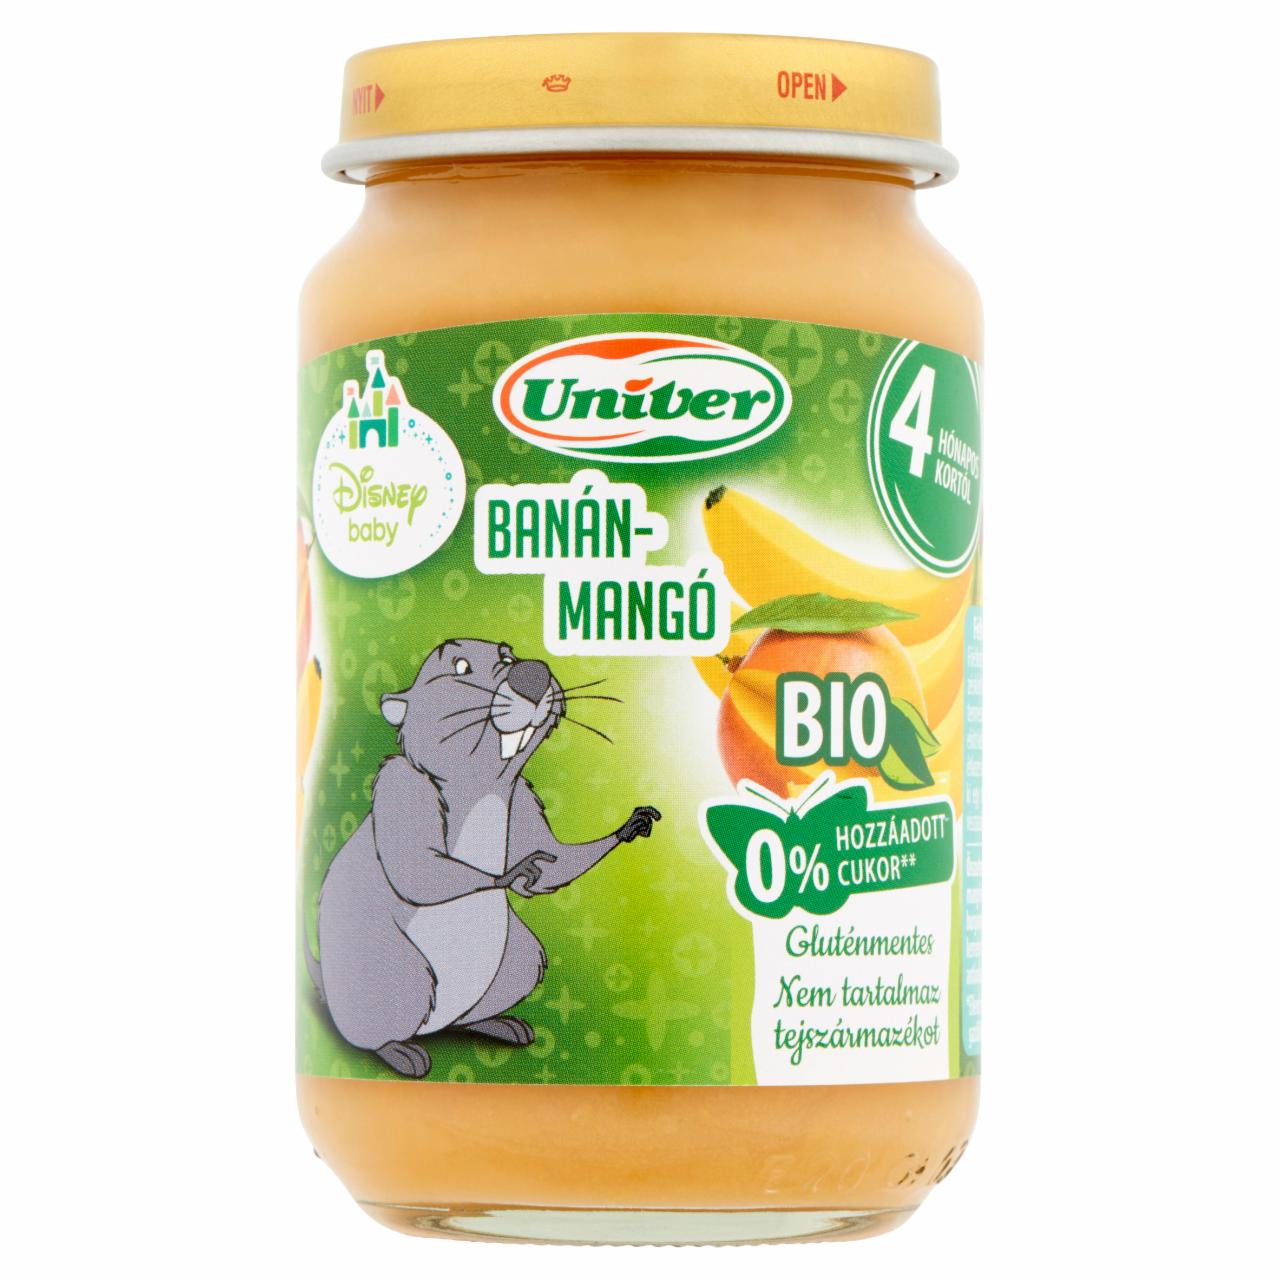 Képek - Univer BIO banán-mangó bébidesszert 4 hónapos kortól 163 g